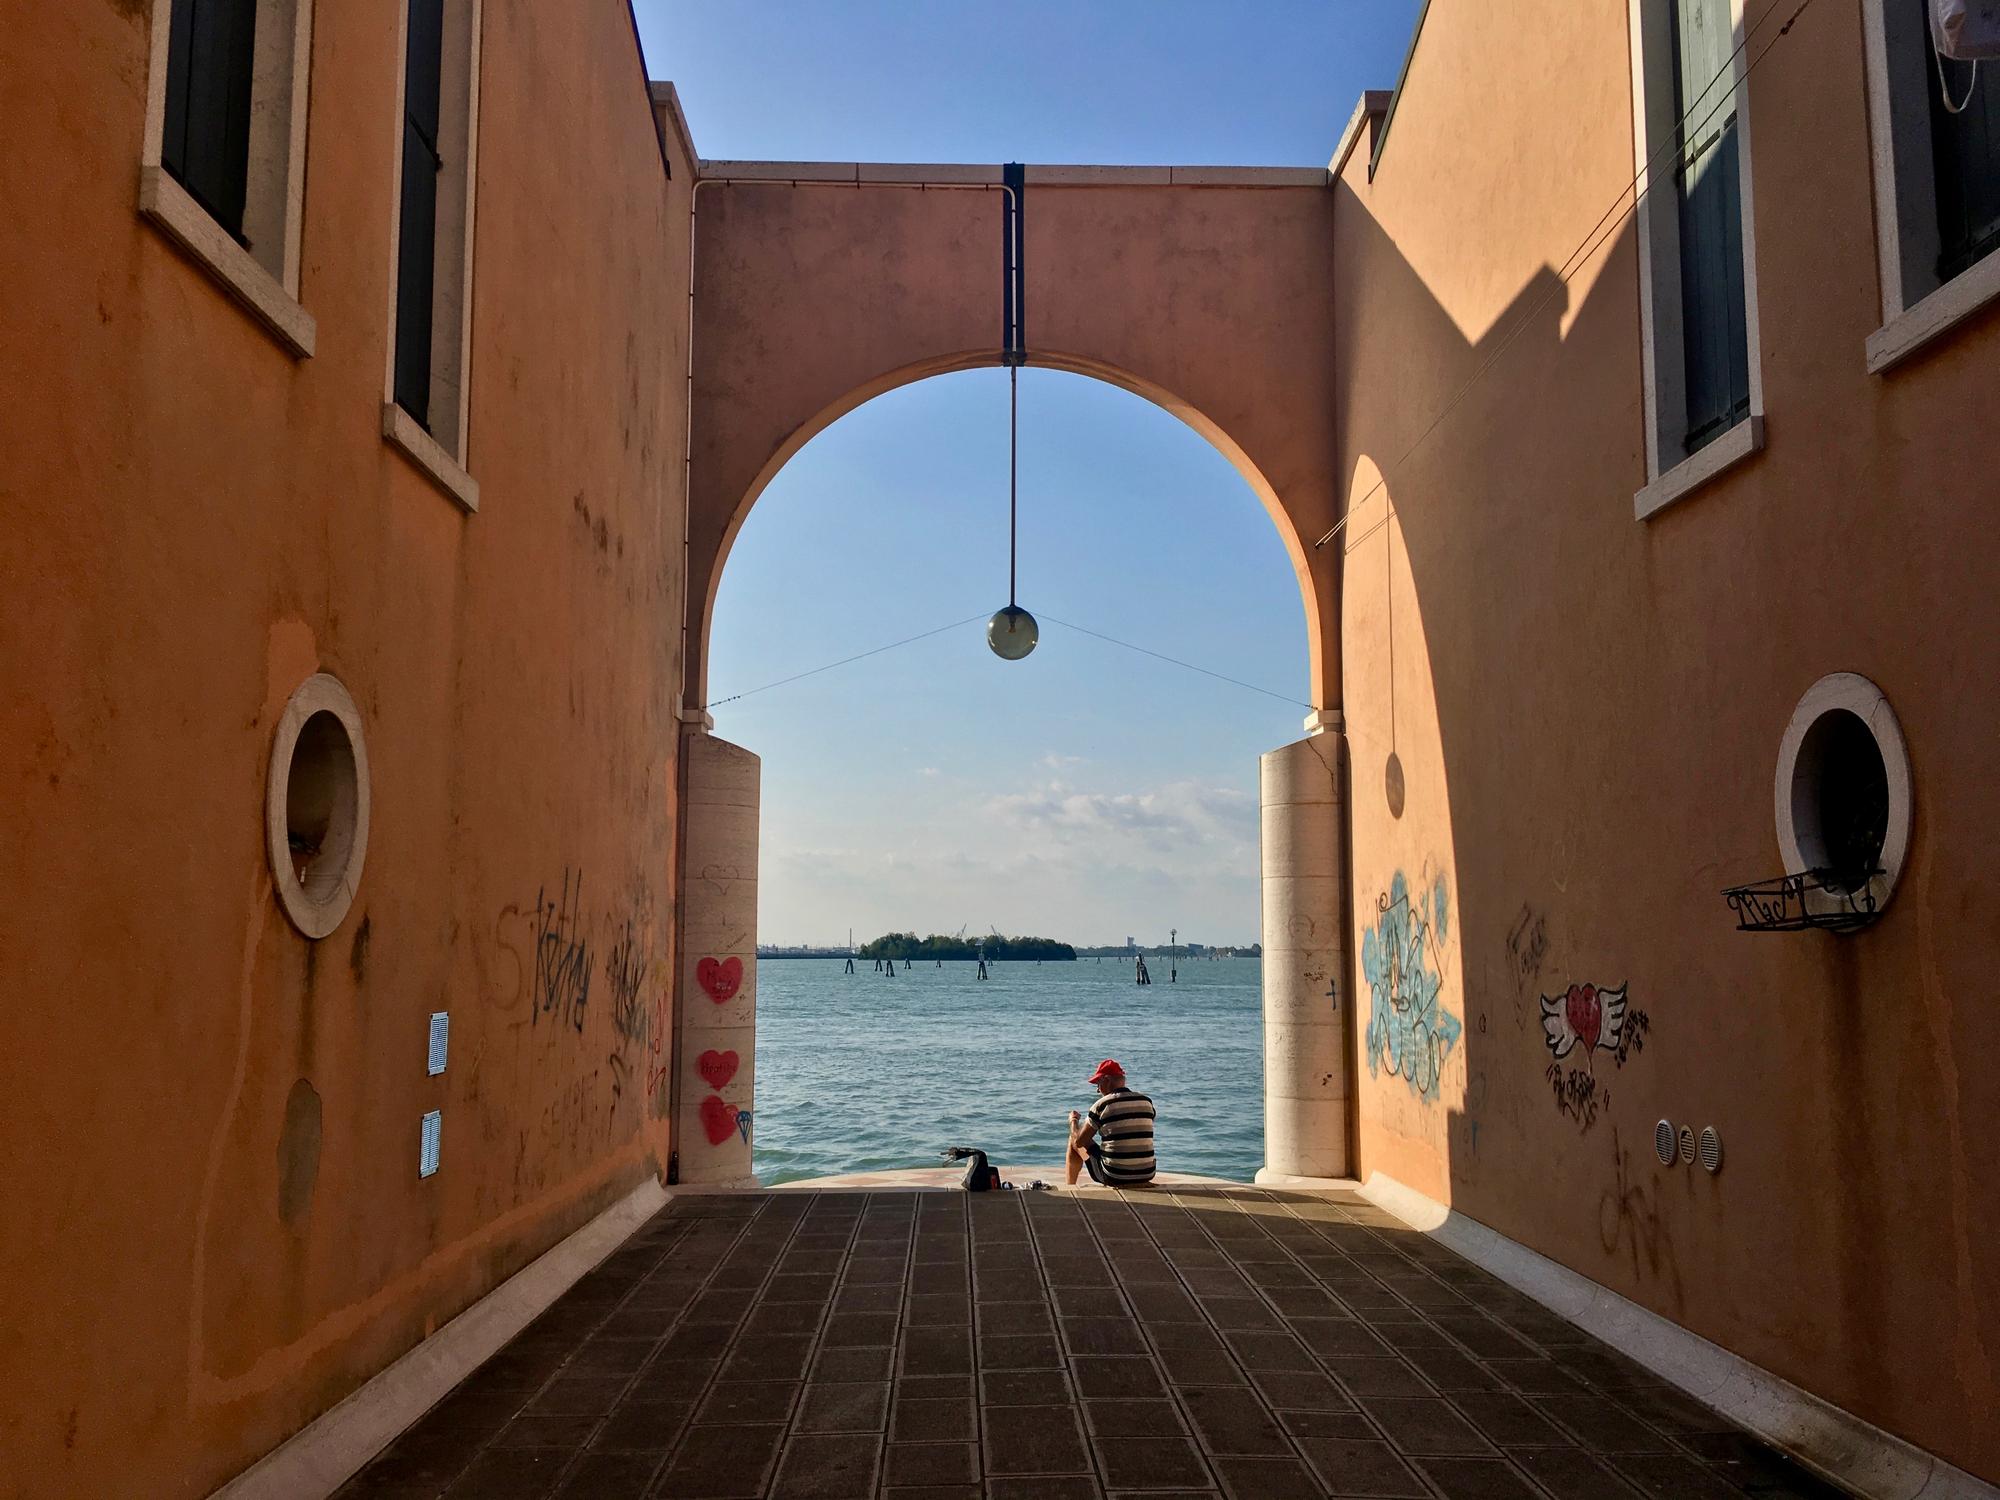 🇮🇹 Венеция, Италия, сентябрь 2017.